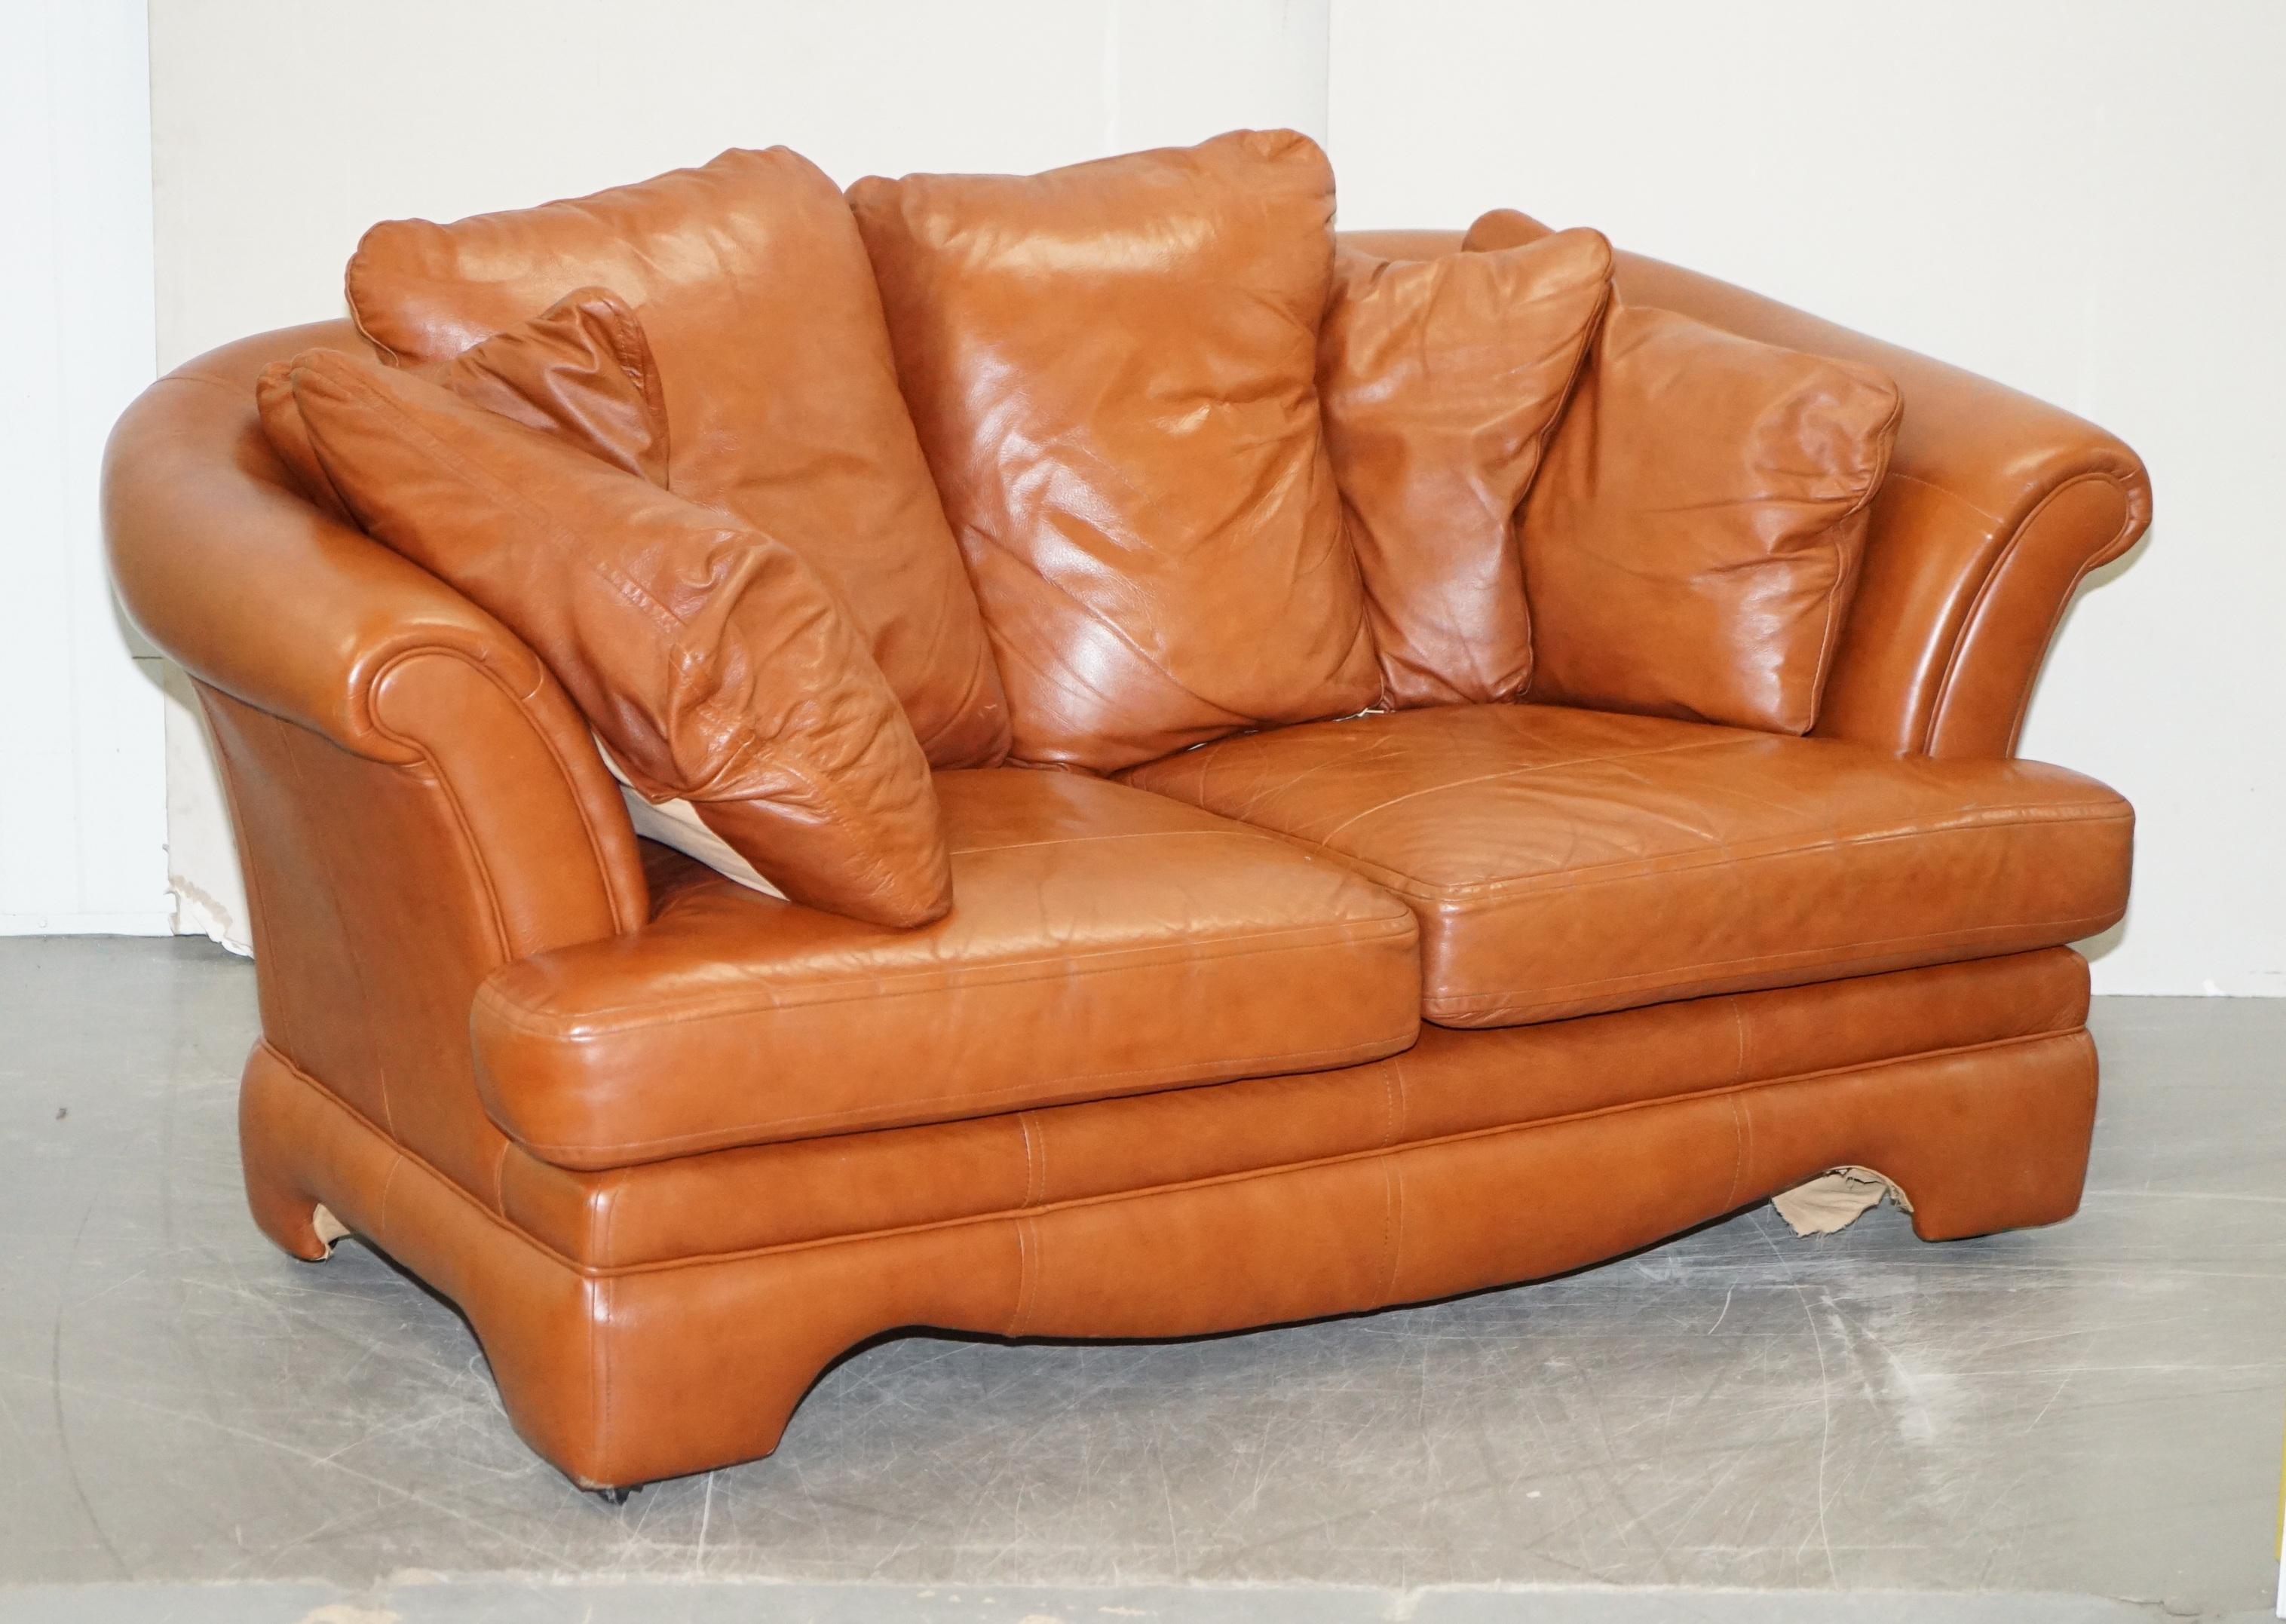 Nous avons le plaisir de vous proposer à la vente ce très bel ensemble canapé et fauteuil en cuir marron foncé avec coussins amovibles 

Un ensemble décoratif et confortable de belle apparence, les coussins de dos sont des pièces combinées solides